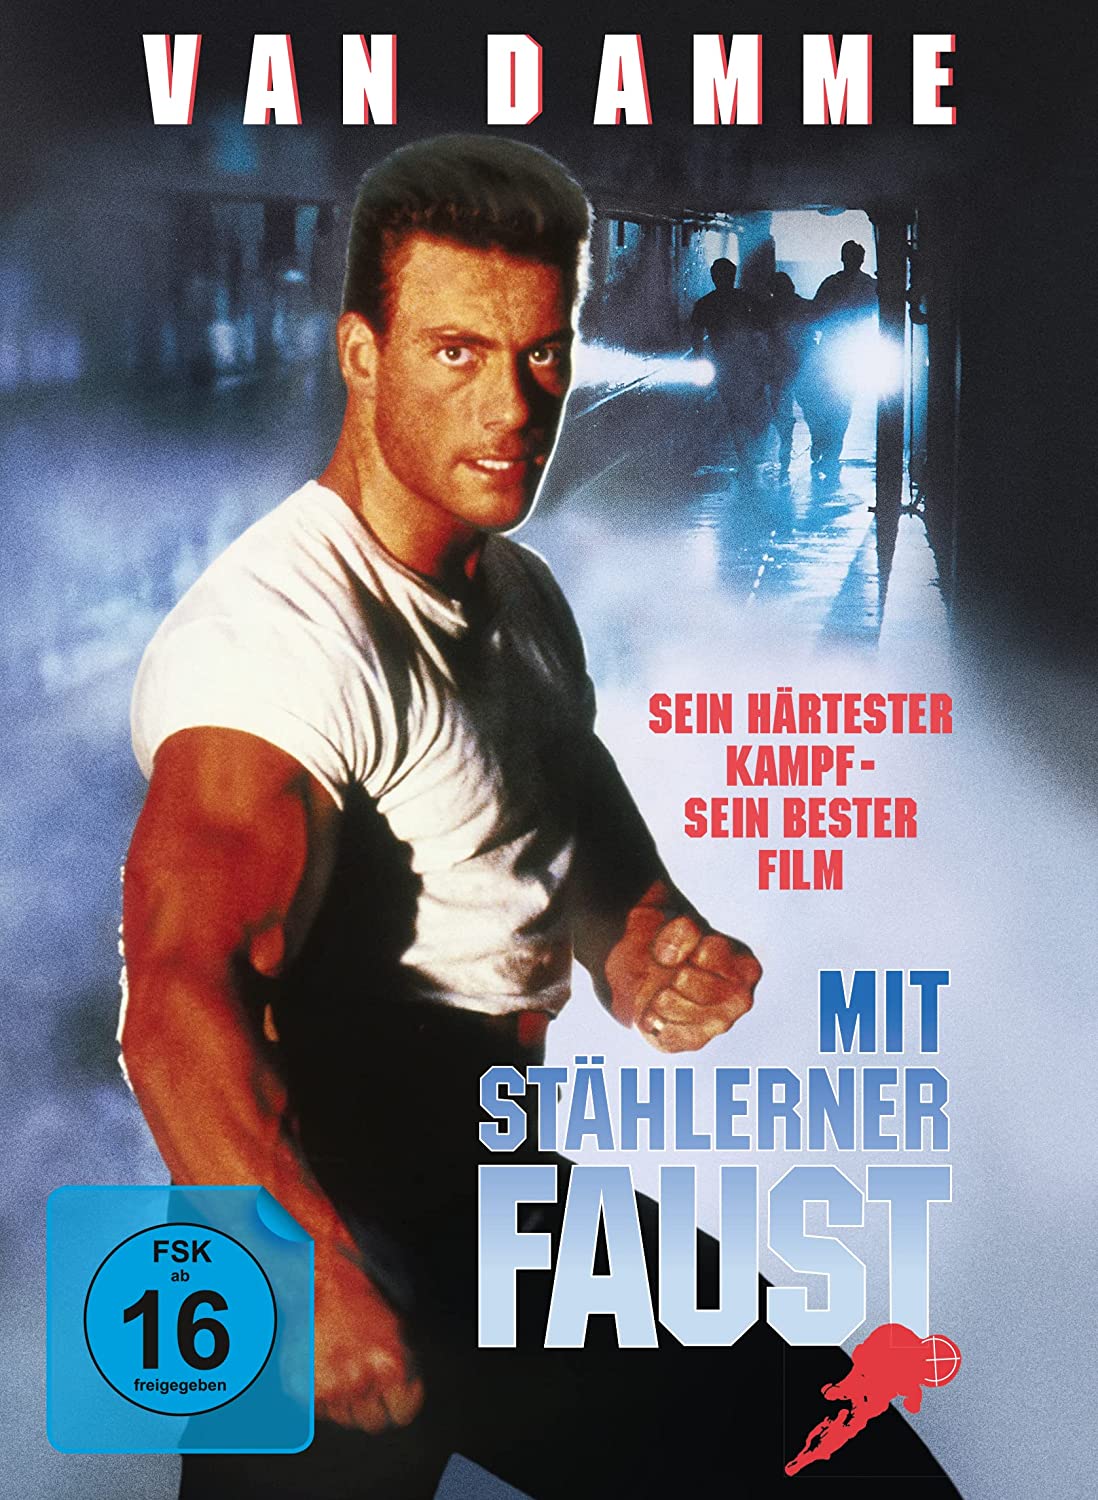 Mit stählerner Faust (1990) – ab 26. August als 2-Disc Collector's Edition  im Mediabook (Blu-ray+DVD) und als DVD erhältlich – Die Medienhuren